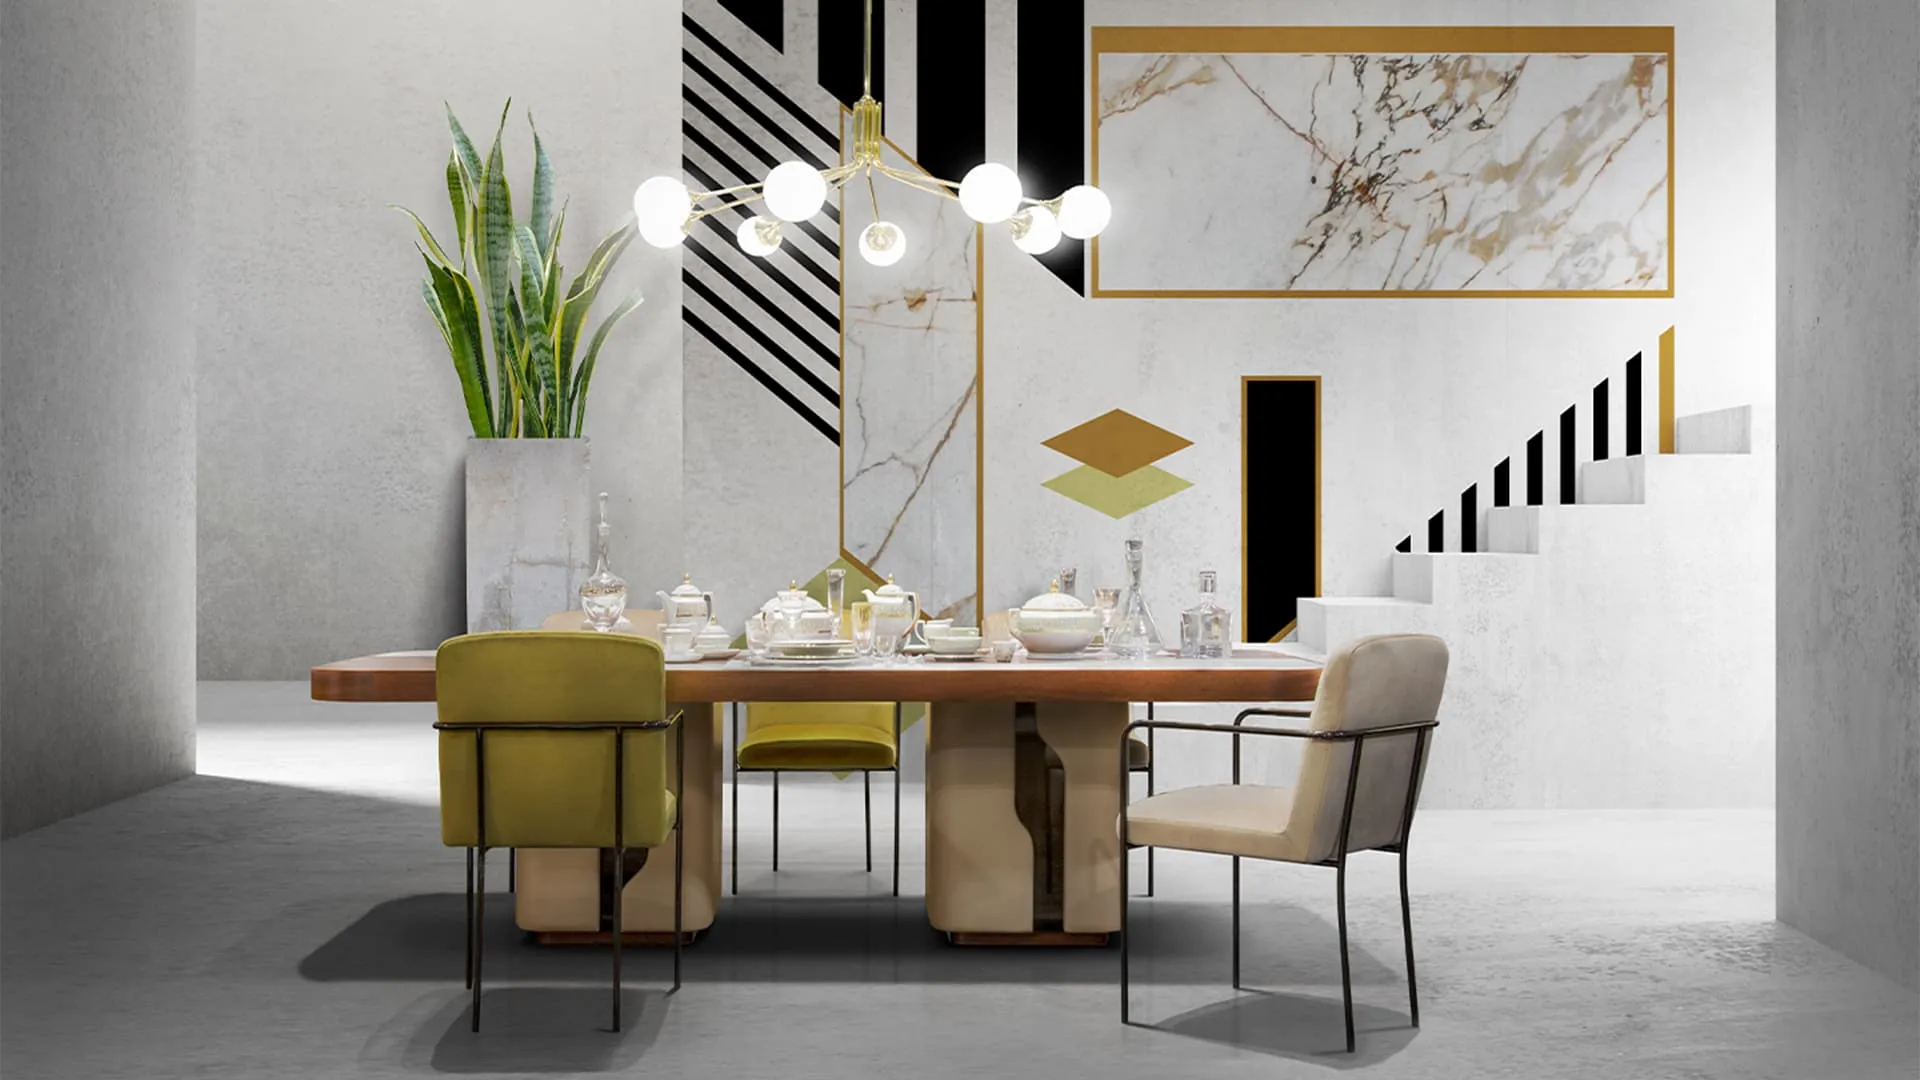 Tavoli e tavolini Prince Formitalia Group | Salone del Mobile